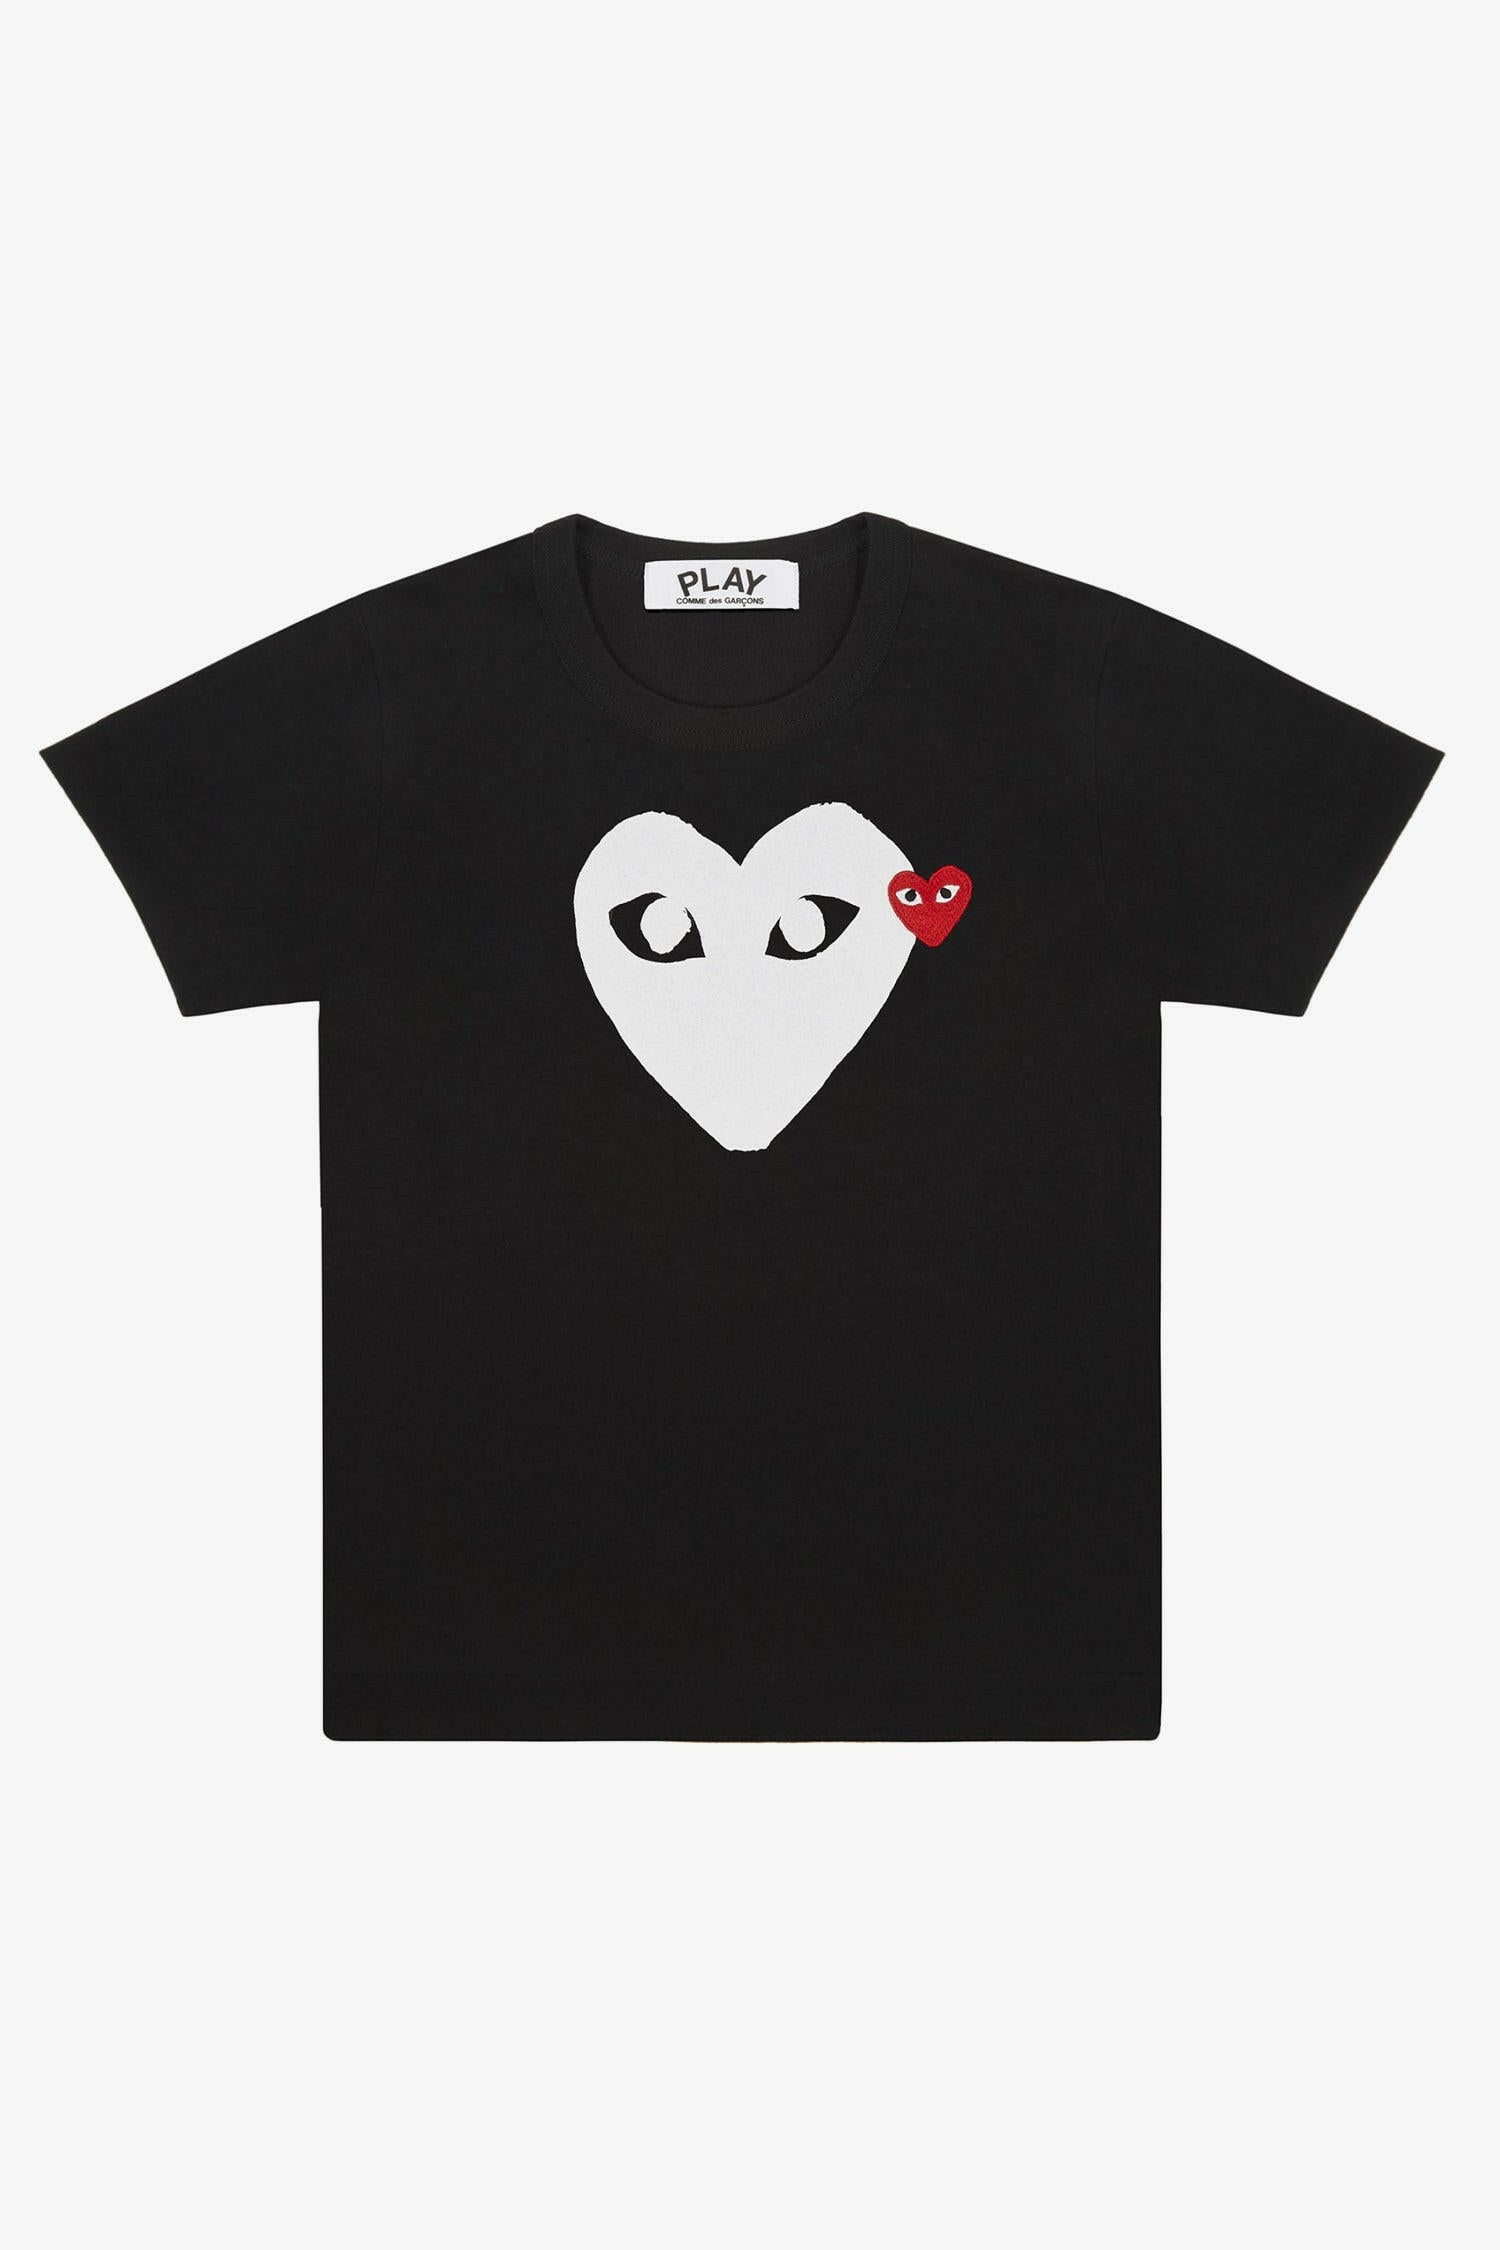 Selectshop FRAME - COMME DES GARCONS PLAY Big White Heart T-Shirt T-Shirt Dubai